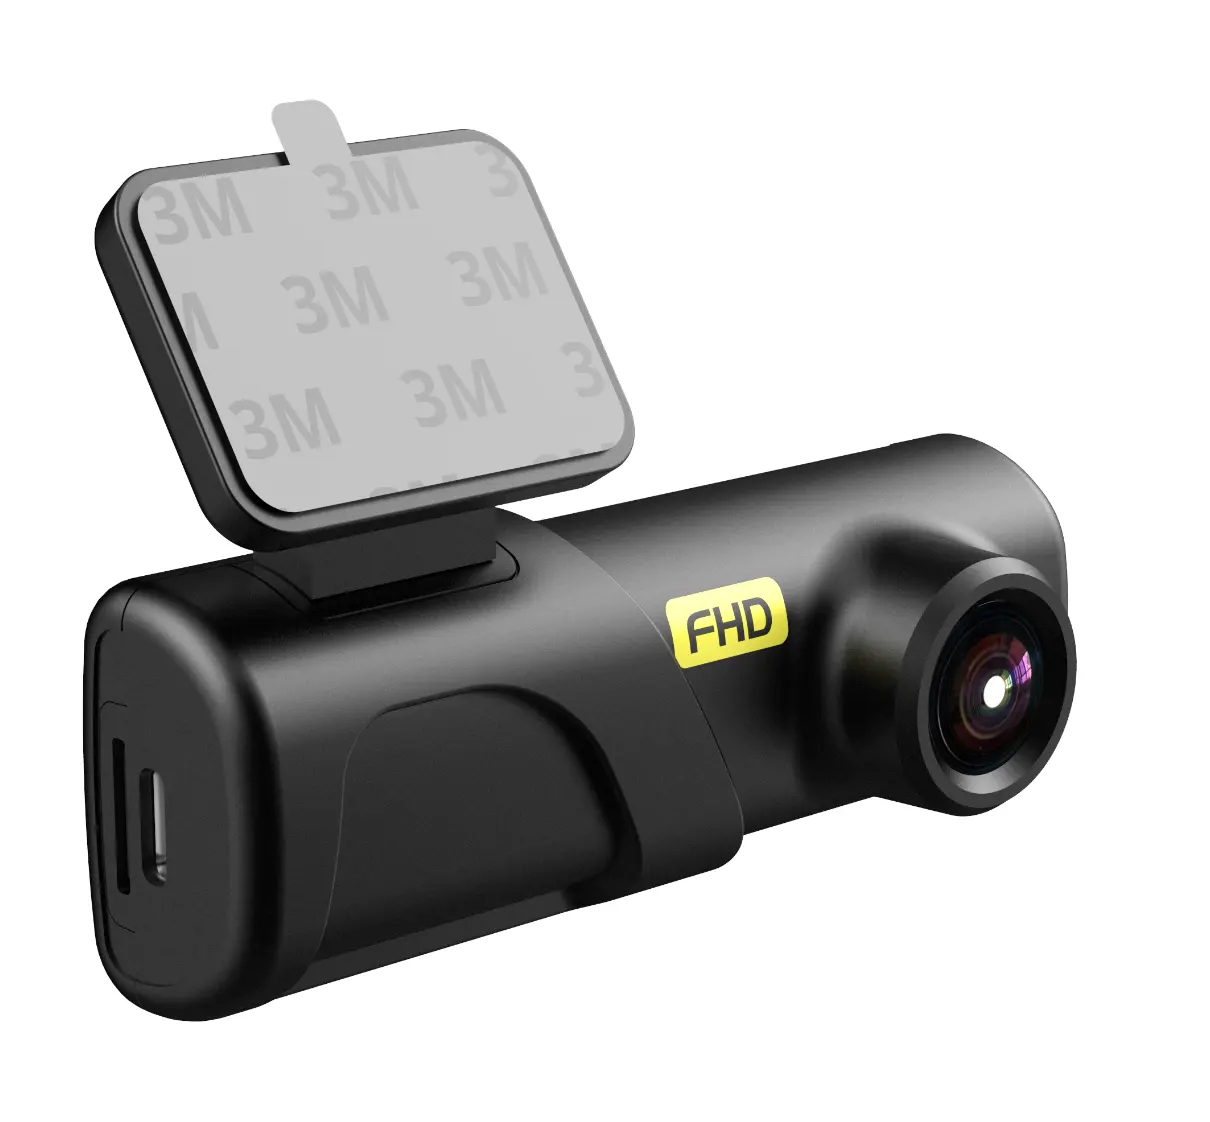 كاميرا لوحة عدادات السيارة للسيارات 2.2 بوصة عالية الوضوح بالكامل 1080 بكسل صندوق أسود للسيارة مسجل فيديو رقمي فيديو رقمي GT300 كاميرا لوحة عدادات السيارة 1080 بكسل مسجل فيديو رقمي